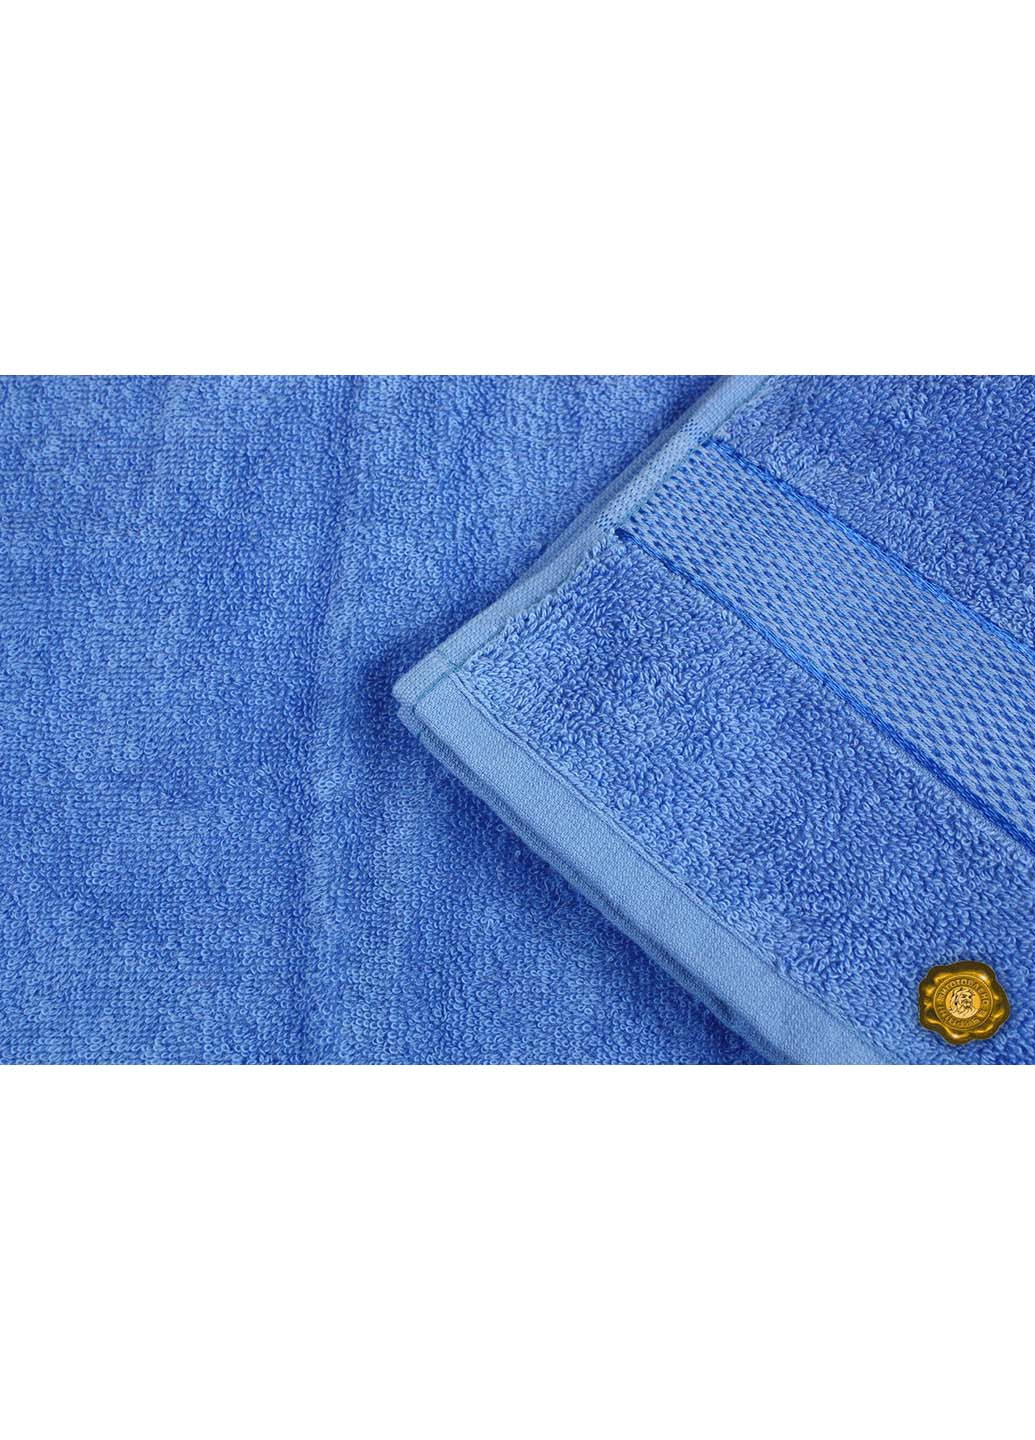 Еней-Плюс полотенце махровое бс0008 70х140 синий производство - Украина